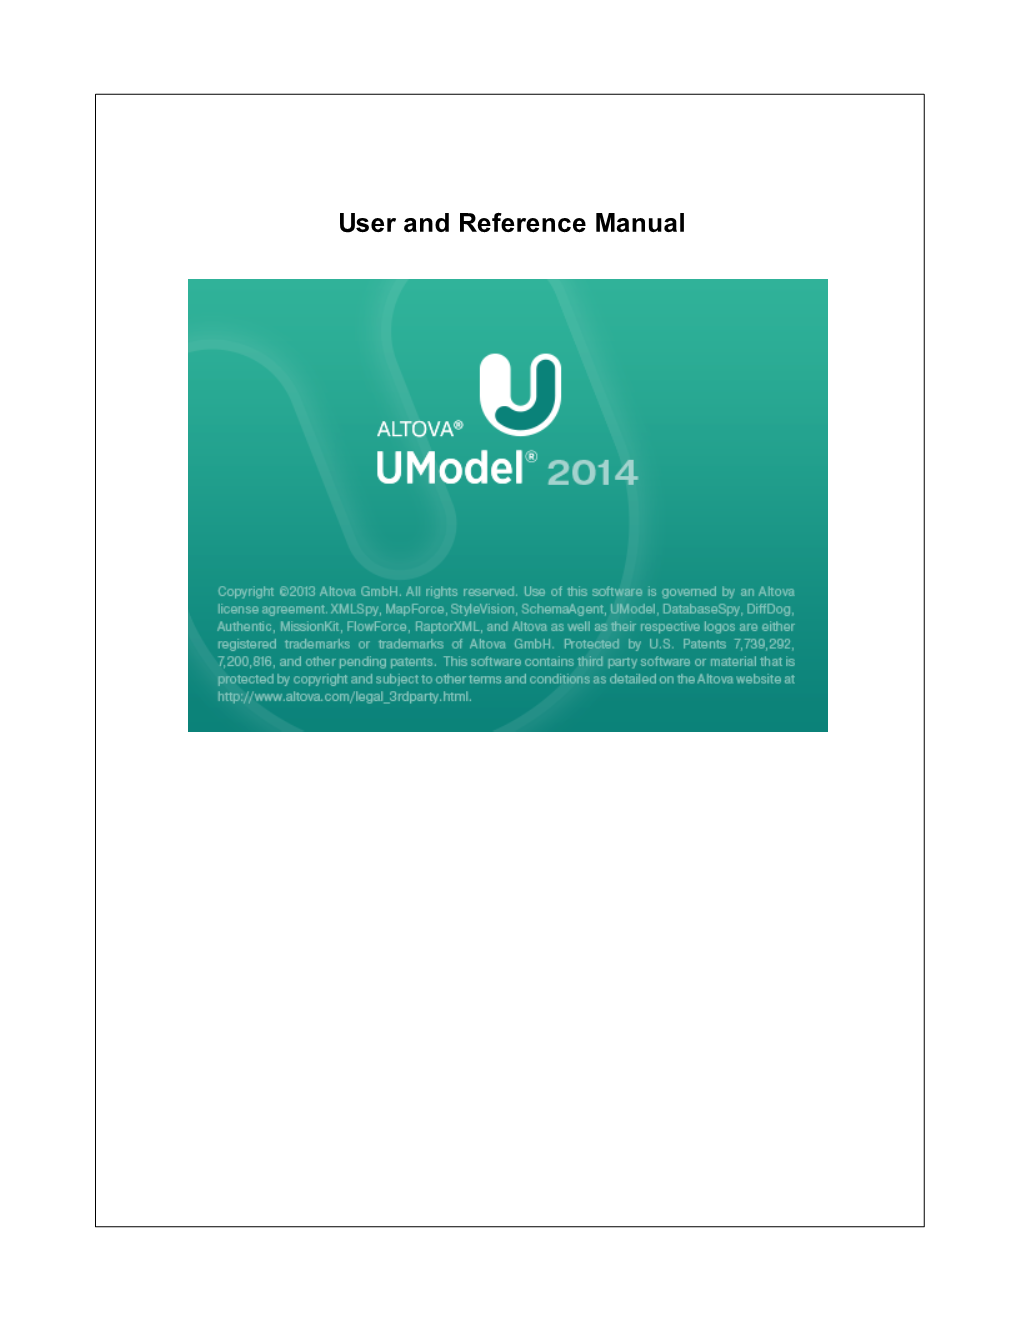 Altova Umodel 2014 User & Reference Manual